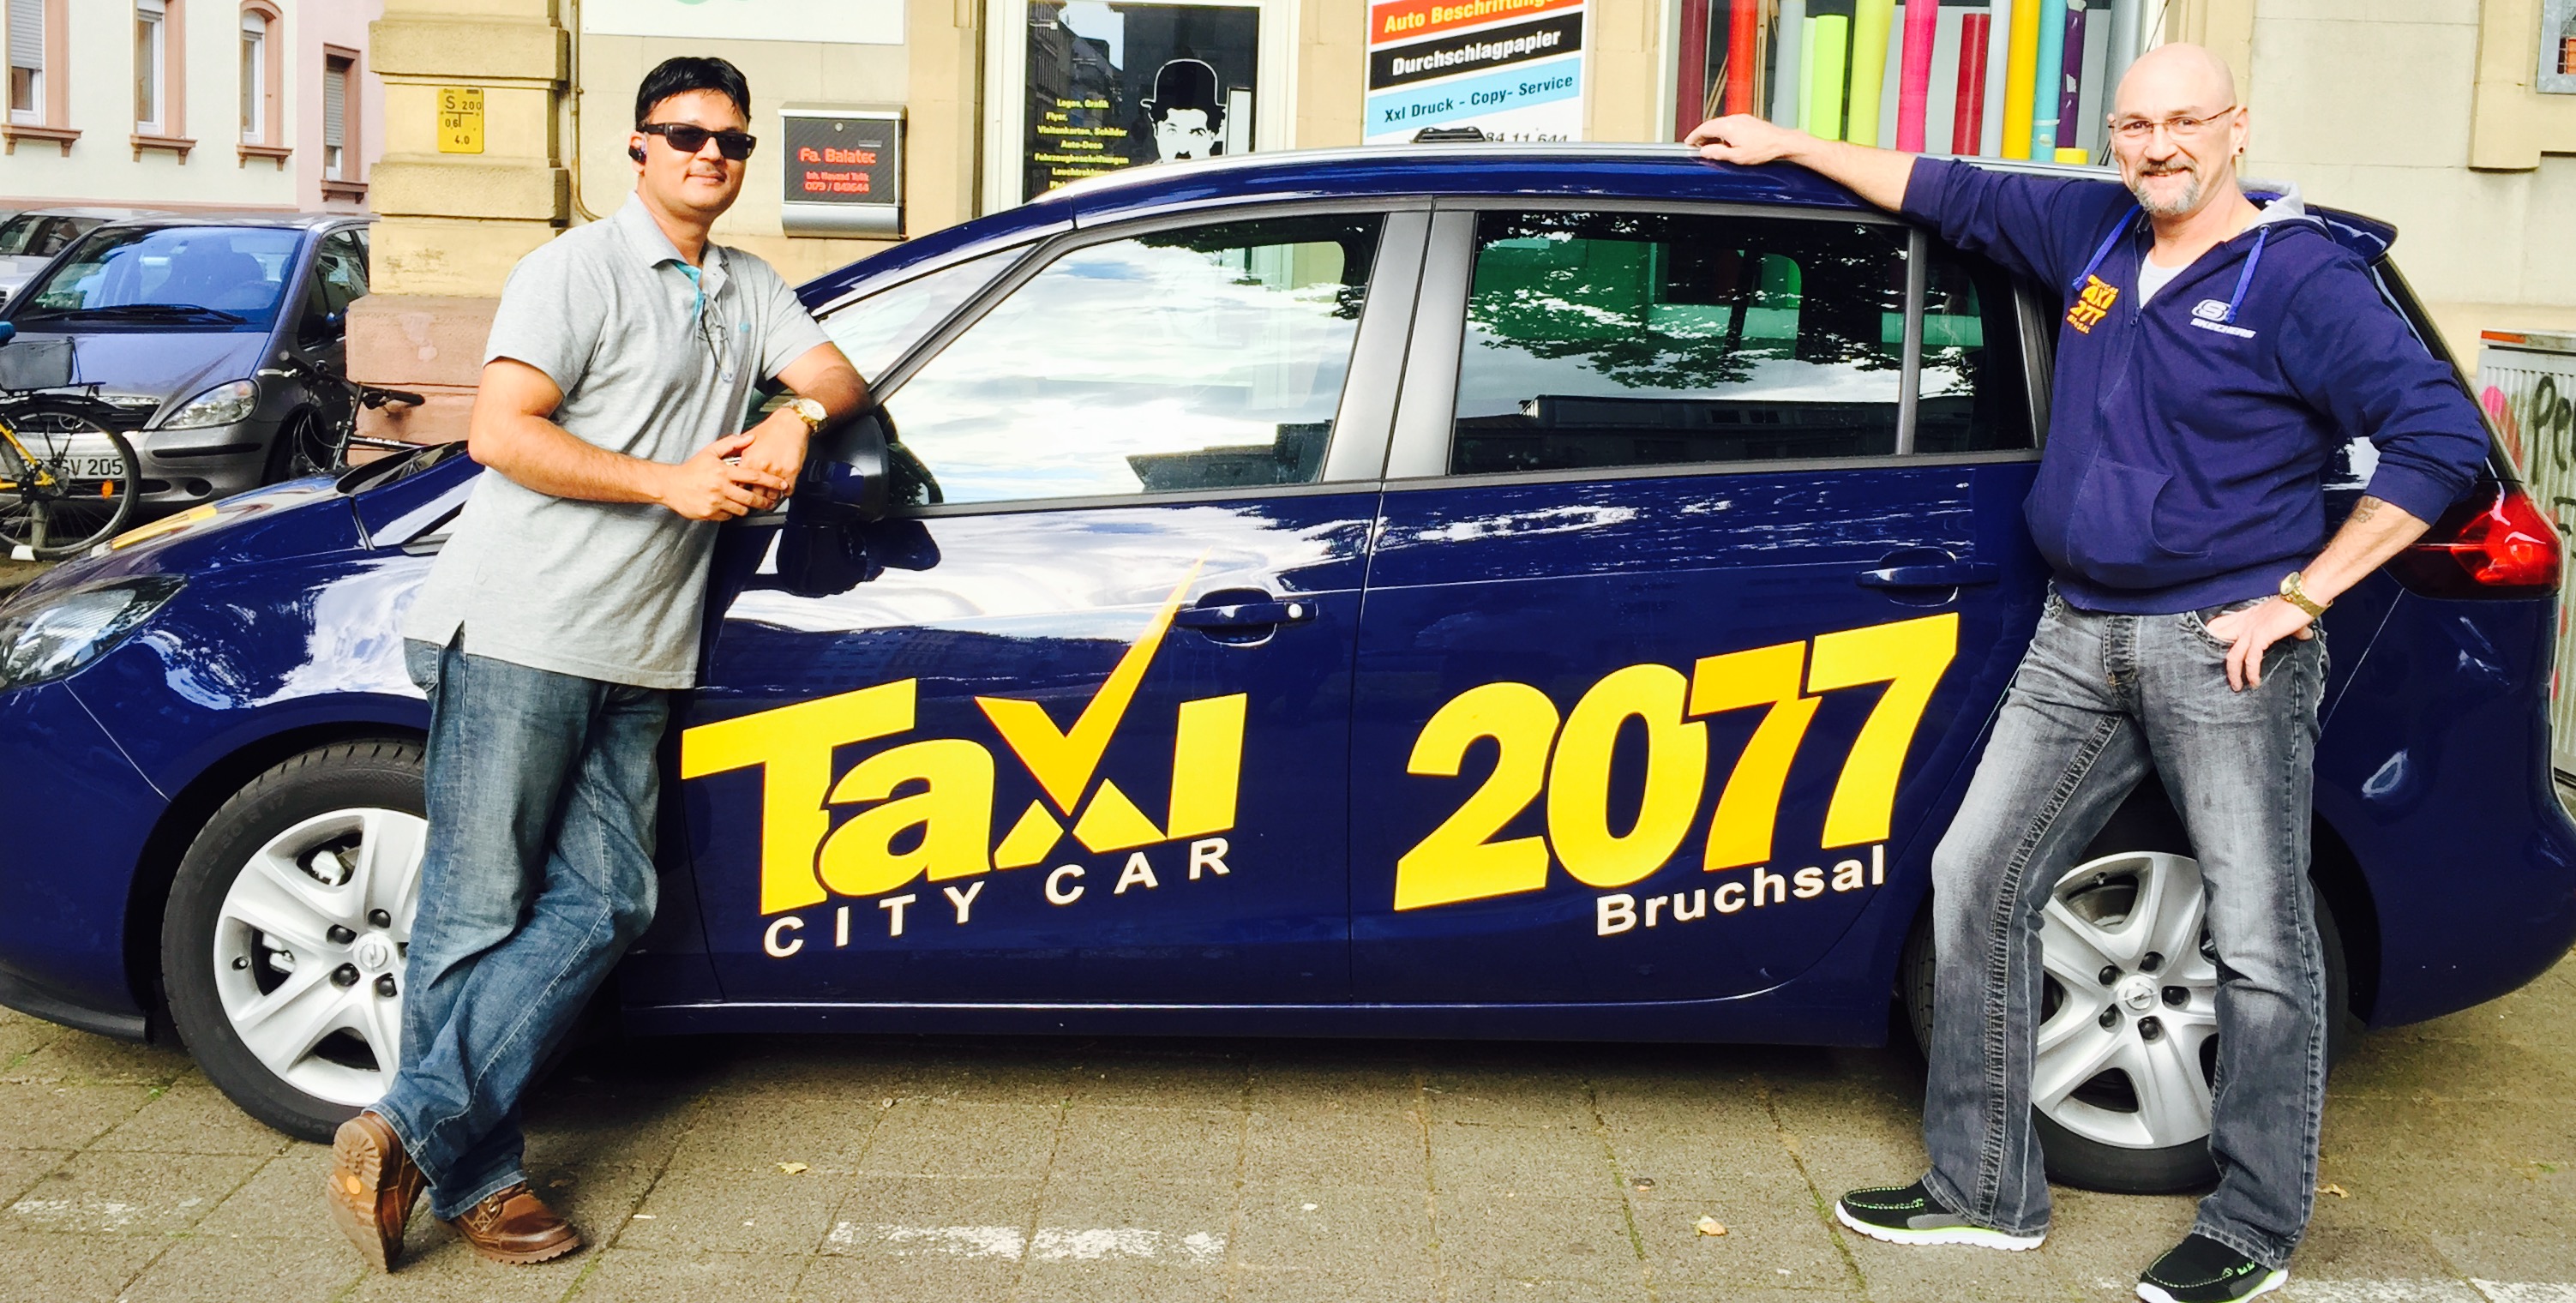 Taxi City Car Bruchsal